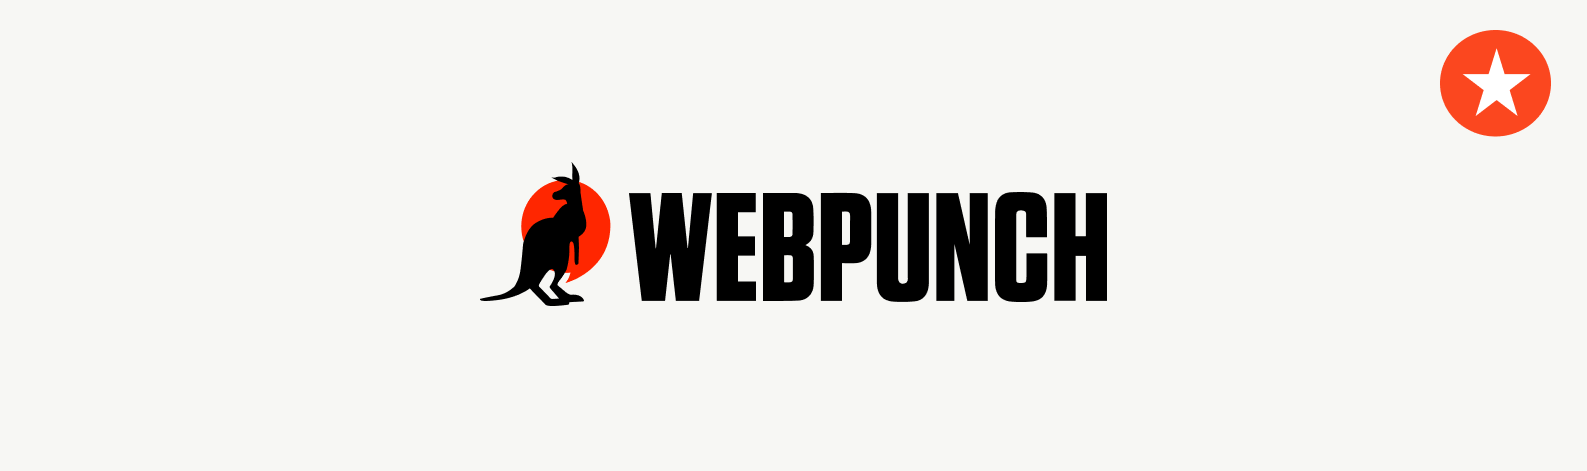 WebPunch